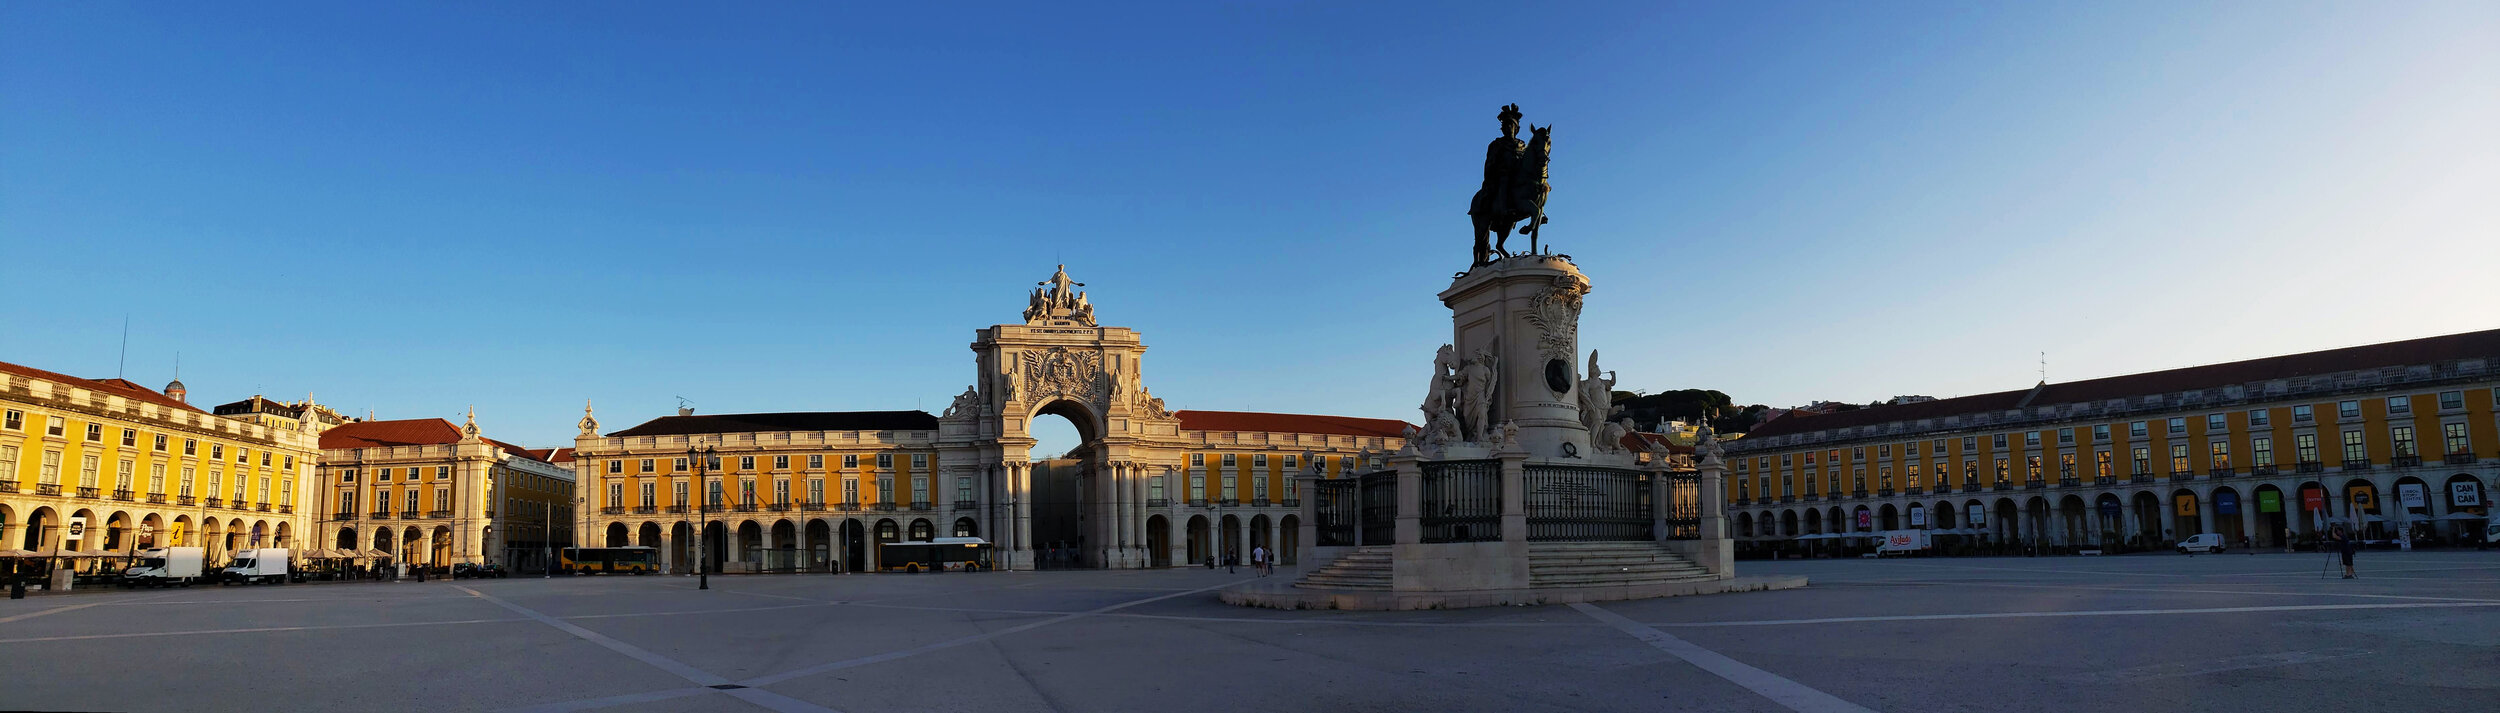 Lisbon City pics (7).jpg